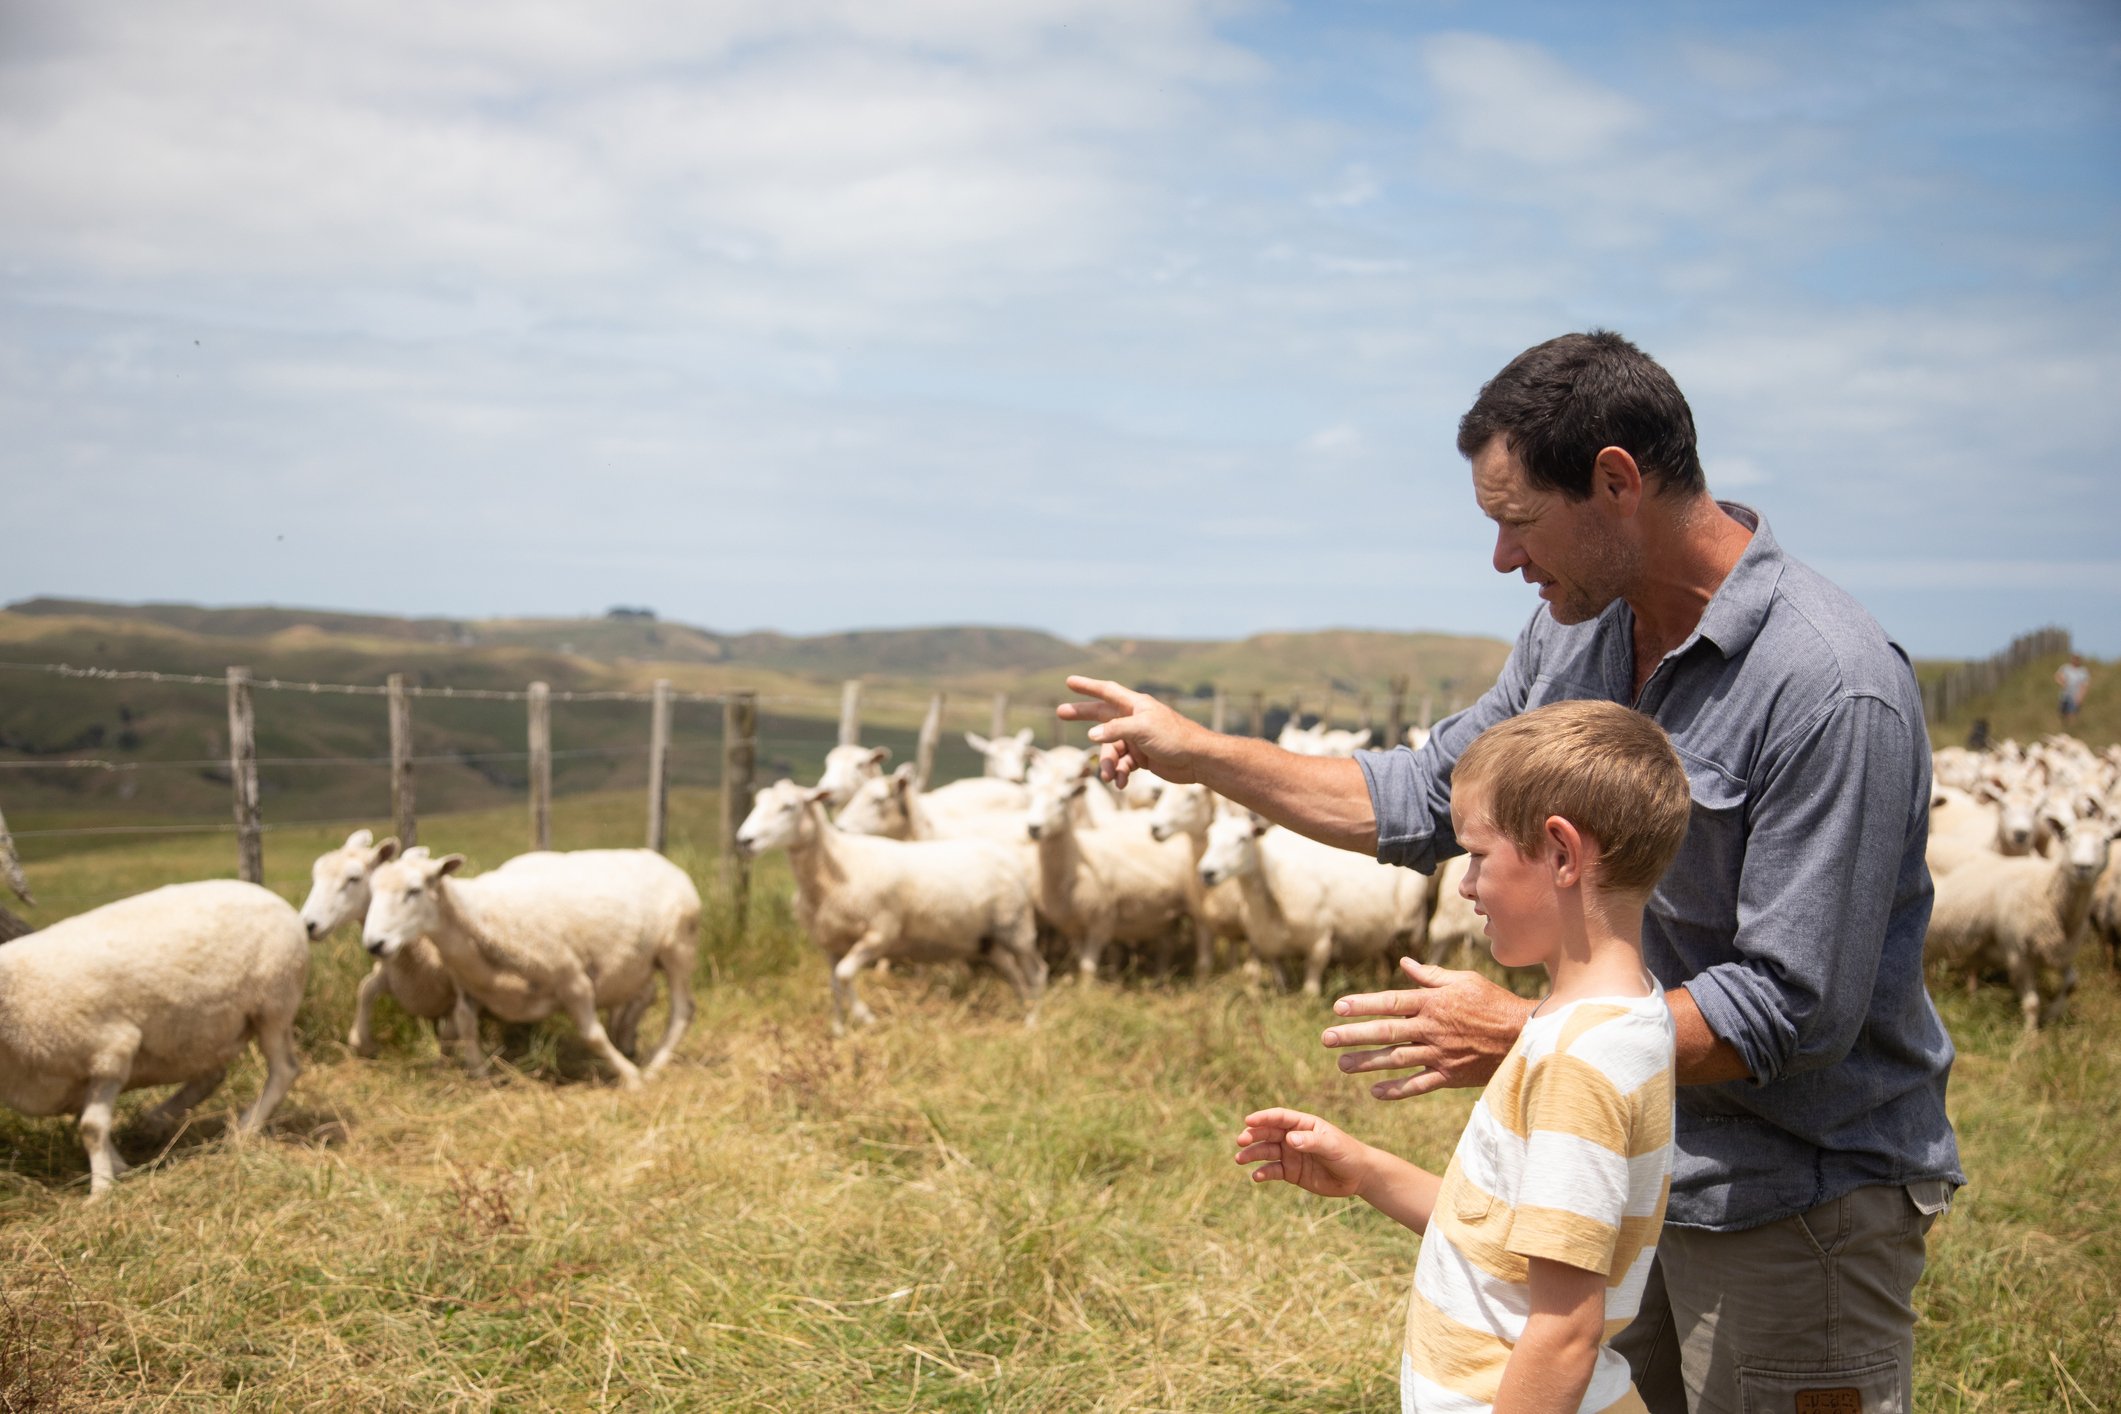 Leo erklärt seinem Sohn Michael die Feinheiten der Landwirtschaft. | Quelle: Getty Images